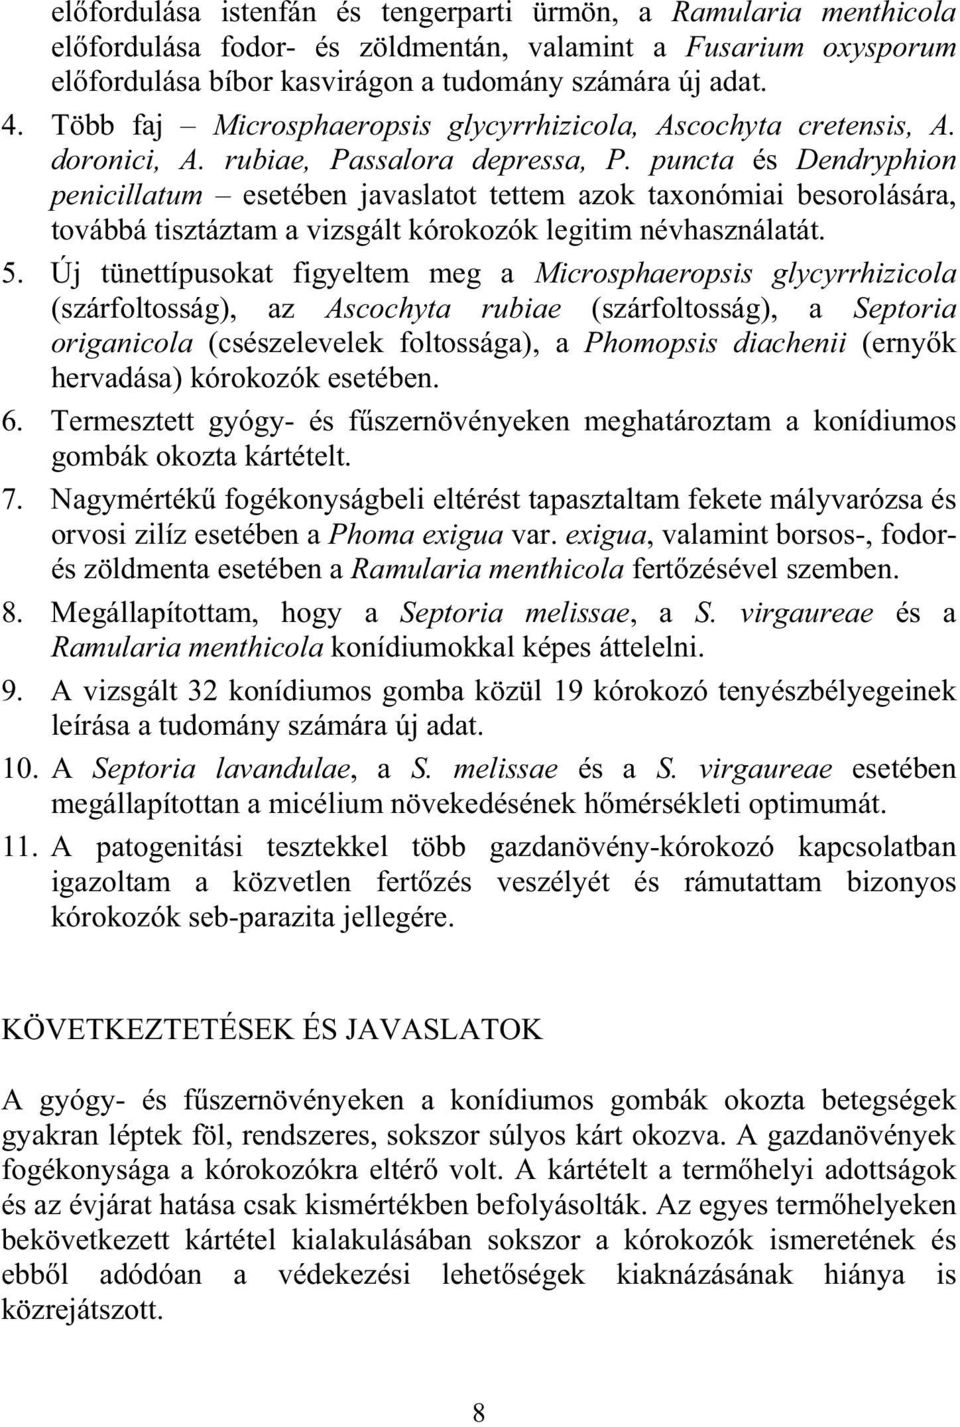 puncta és Dendryphion penicillatum esetében javaslatot tettem azok taxonómiai besorolására, továbbá tisztáztam a vizsgált kórokozók legitim névhasználatát. 5.